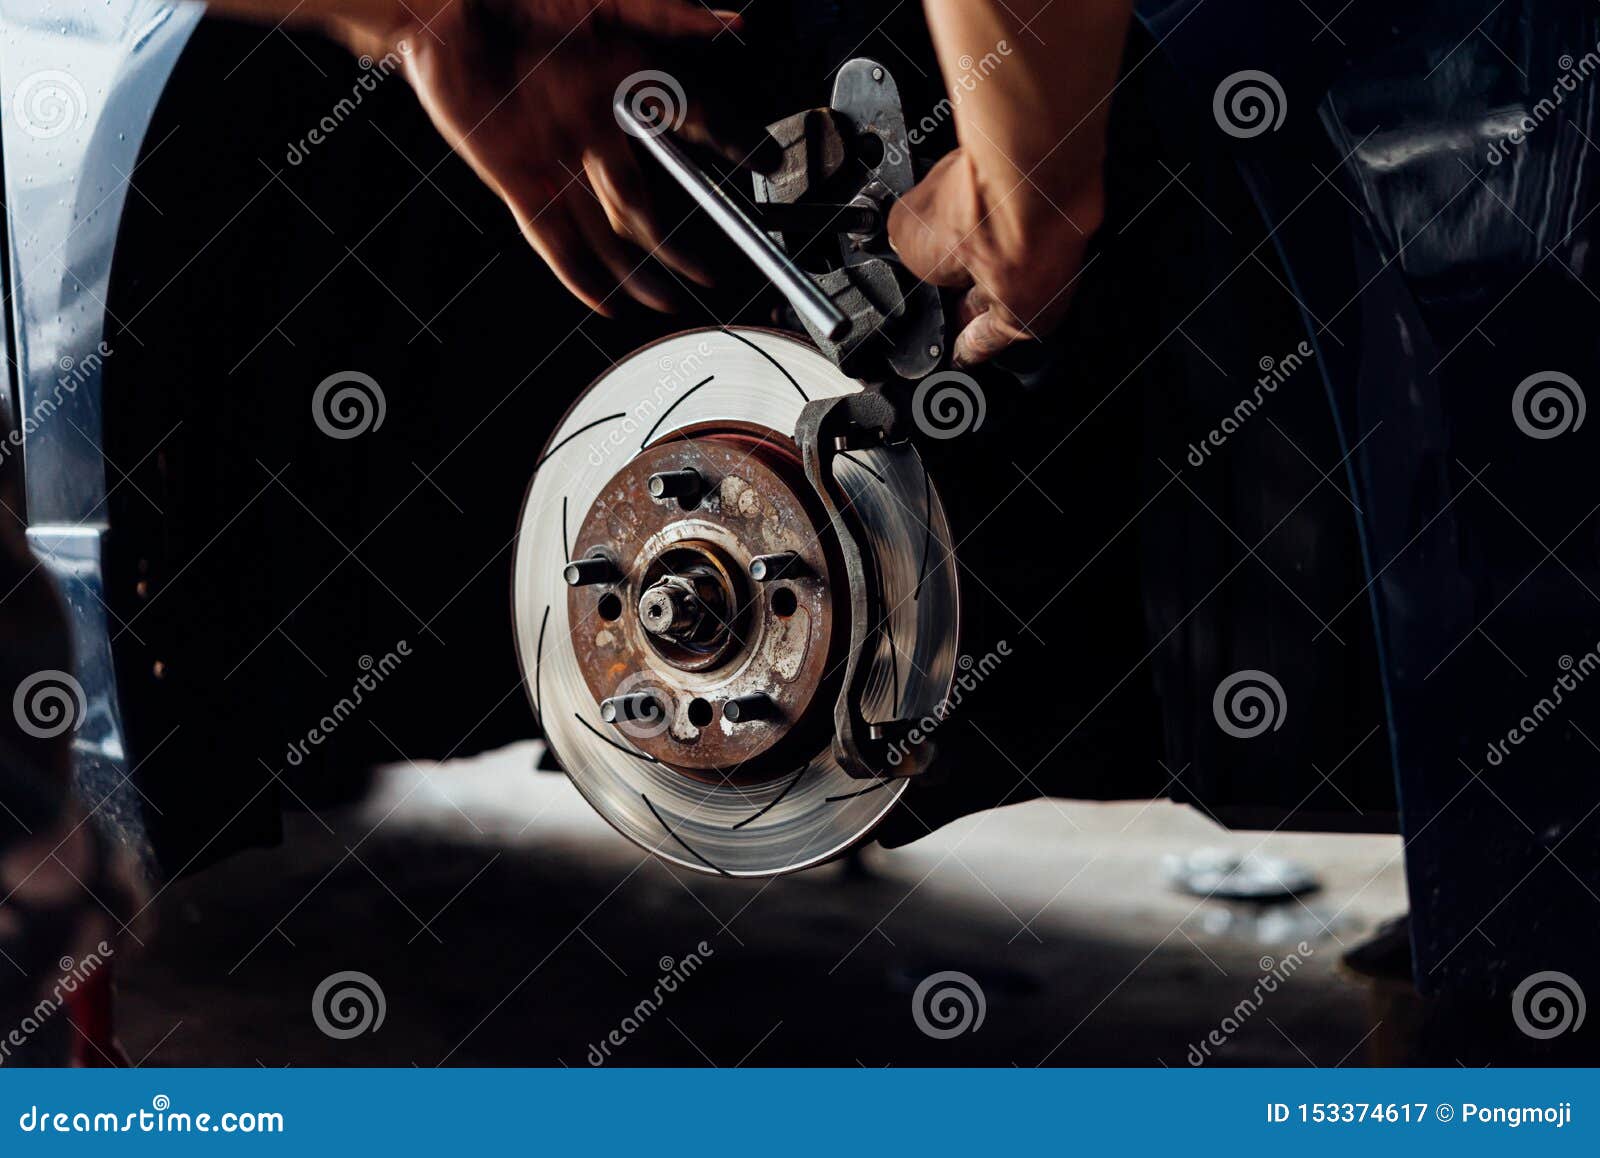 Disc Brake and Asbestos Brake Pads at Car Garage Stock Image - Image of